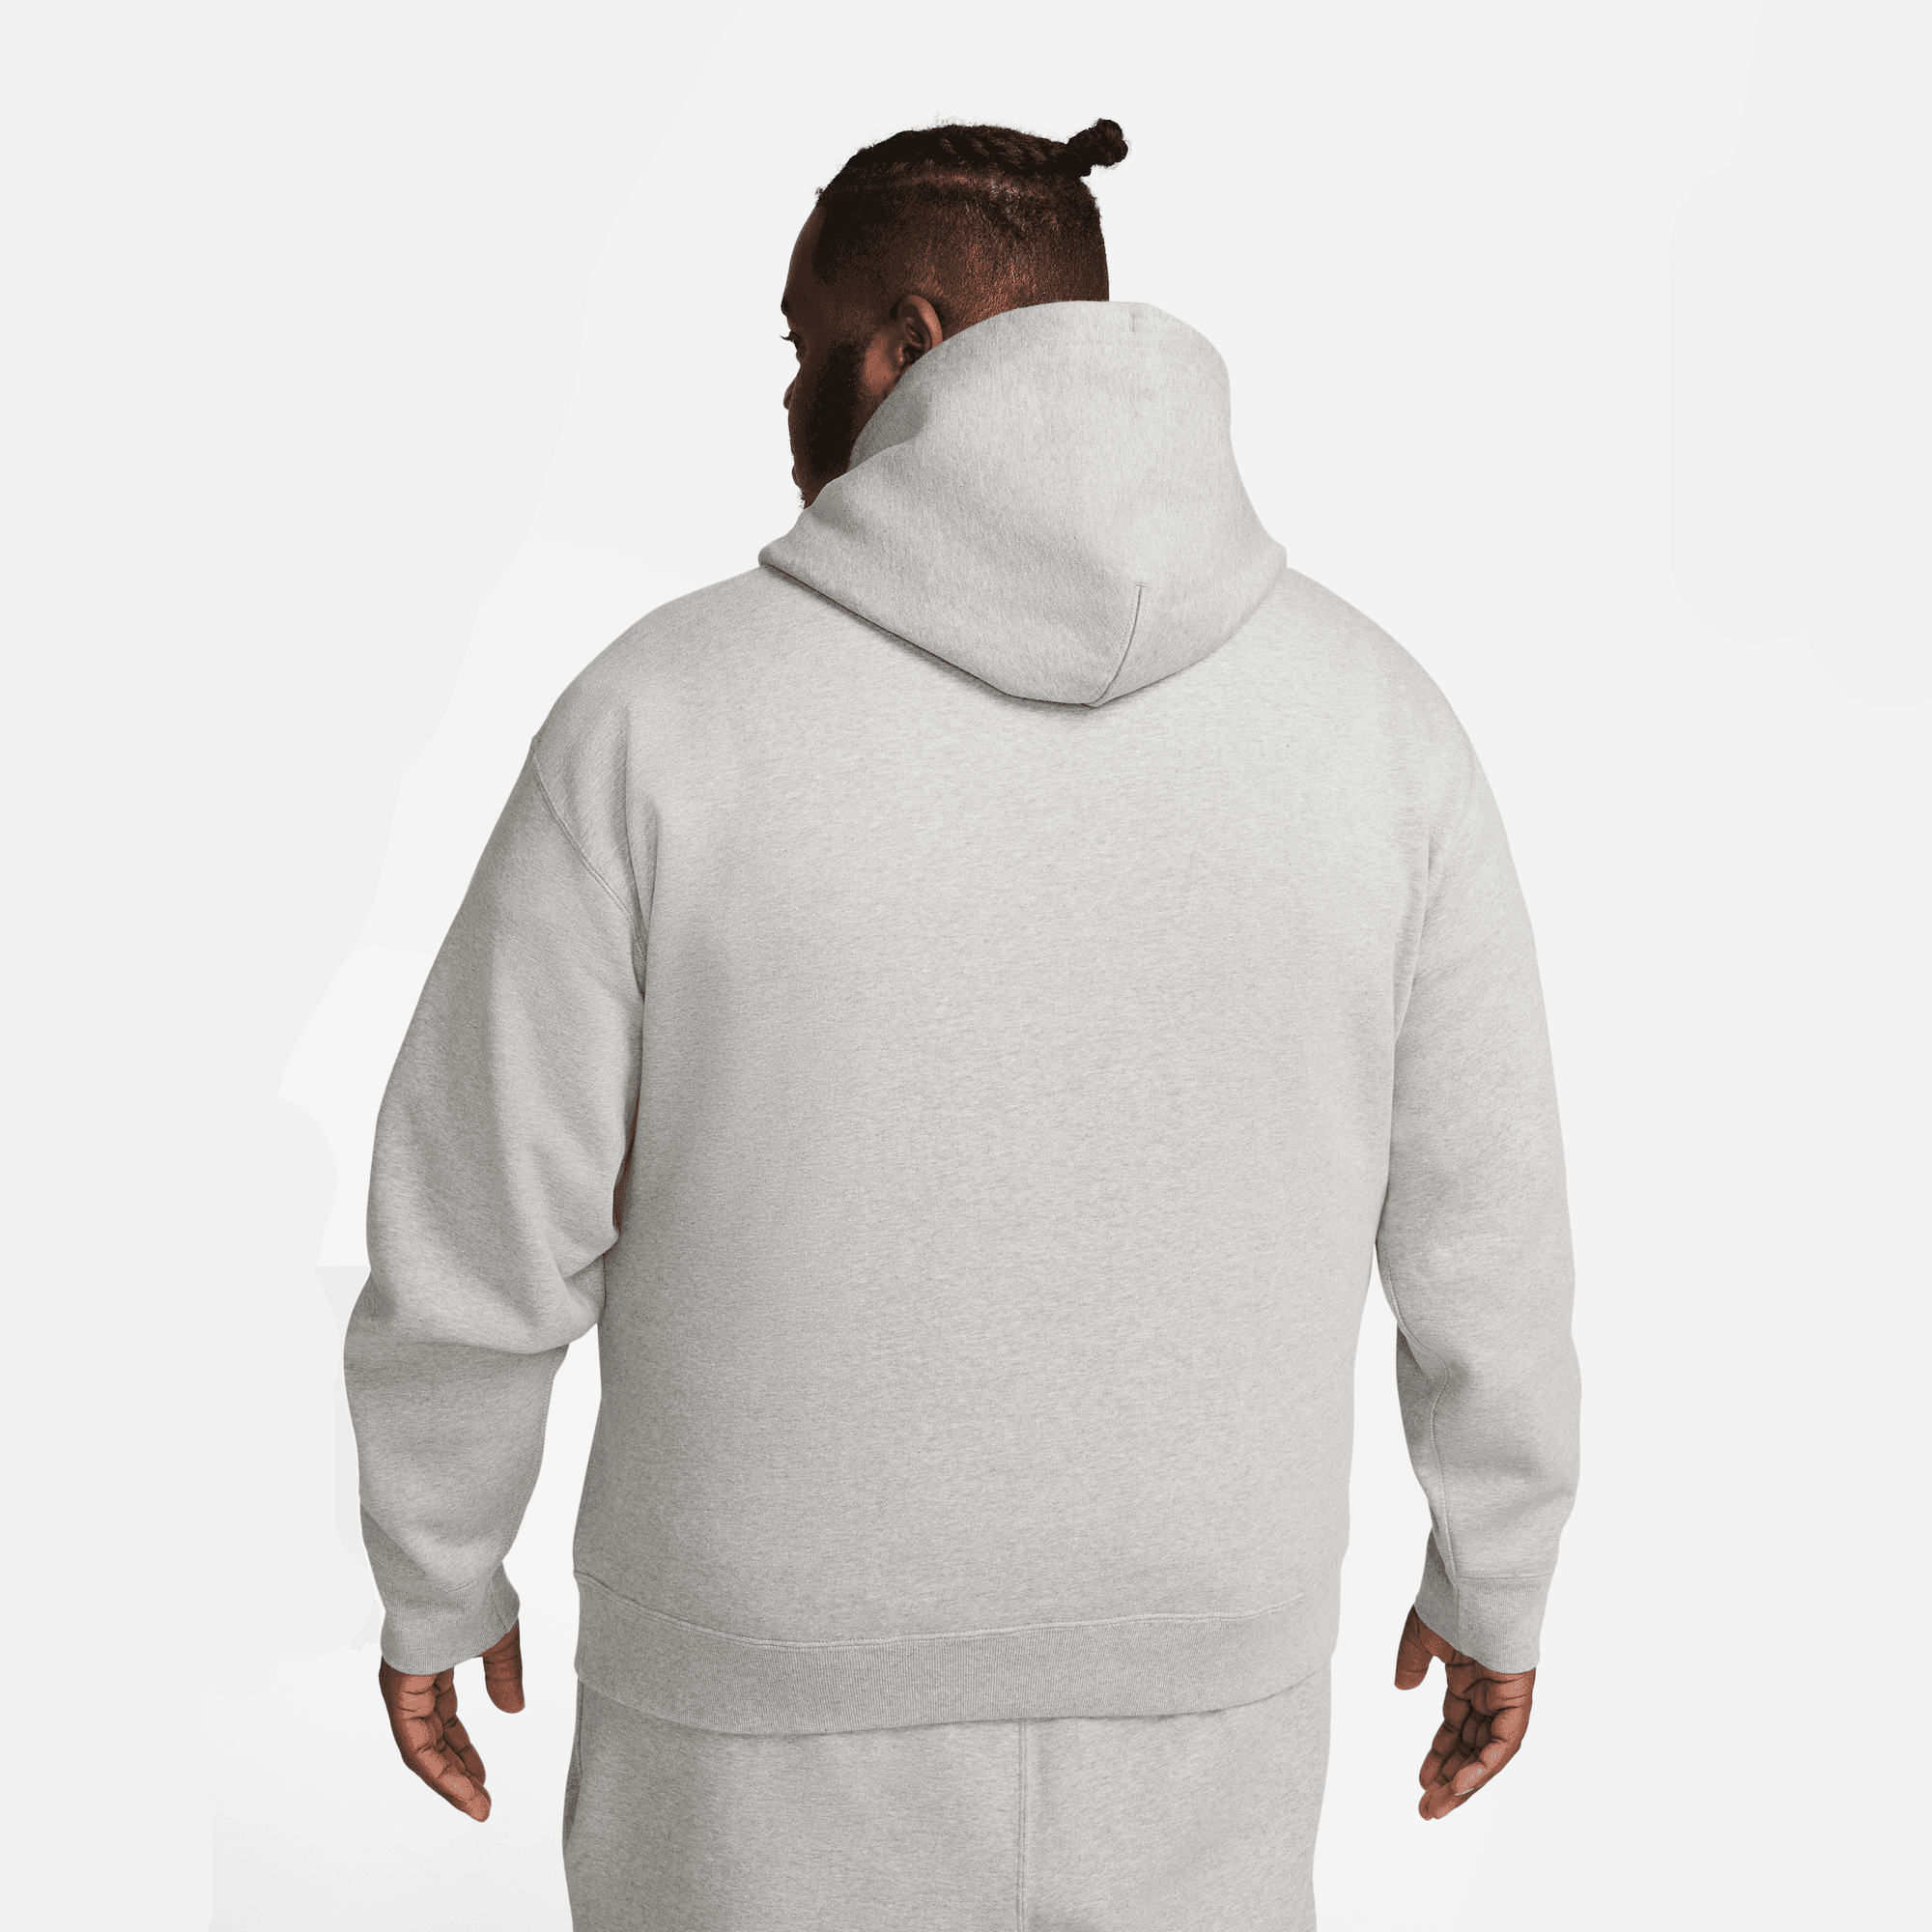 Sweatshirt Nike Solo Swoosh Hooded Sweatshirt DX1355-010